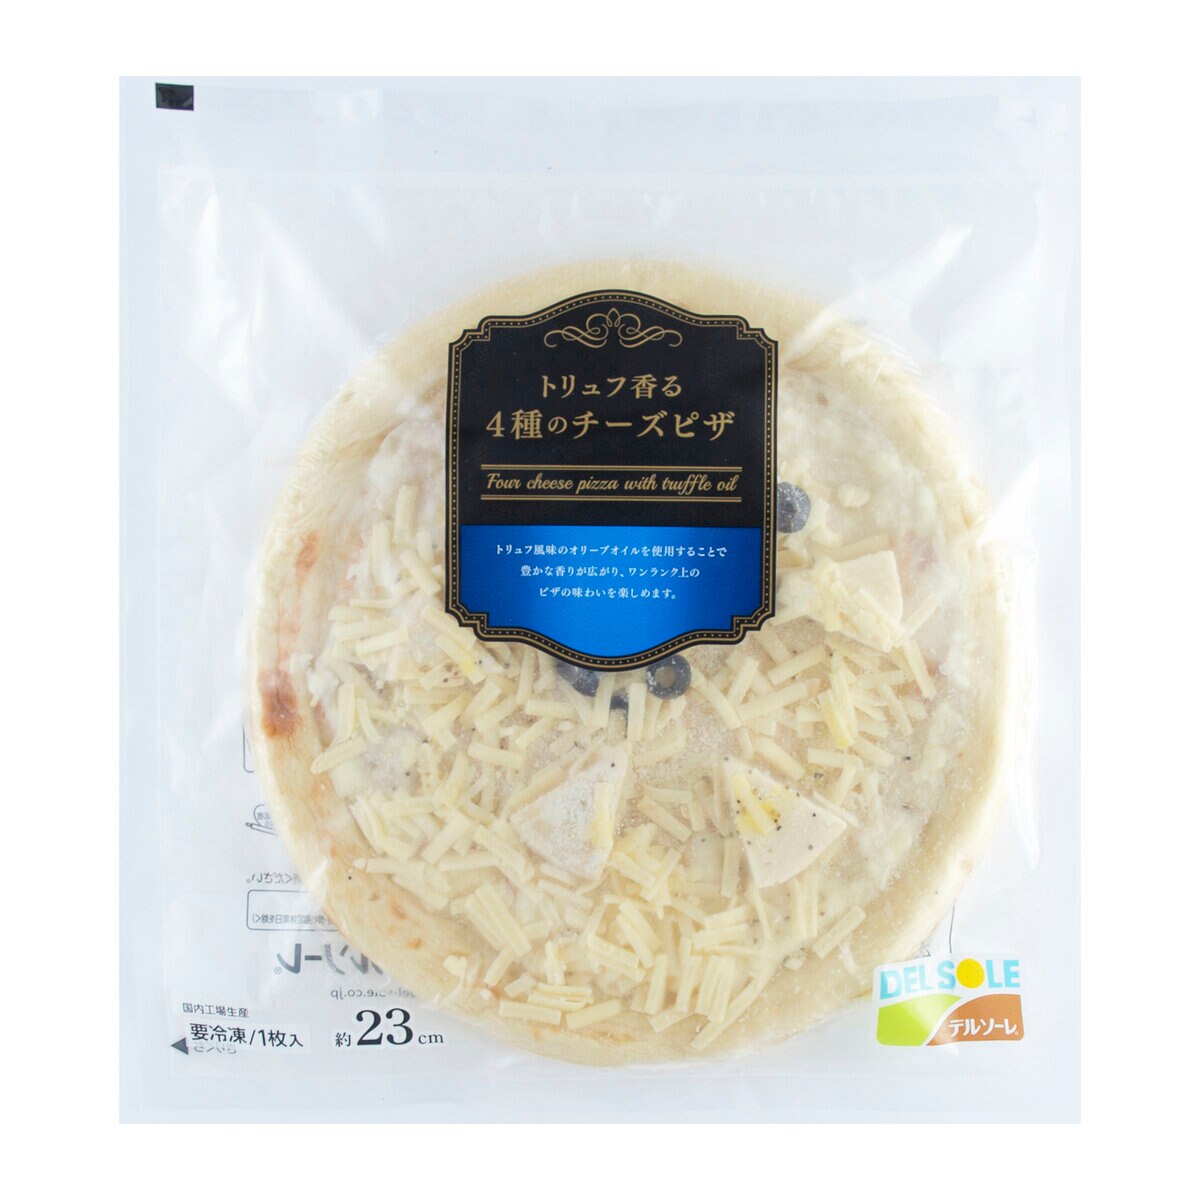 【冷凍】デルソーレ プレミアムピザ10枚セット